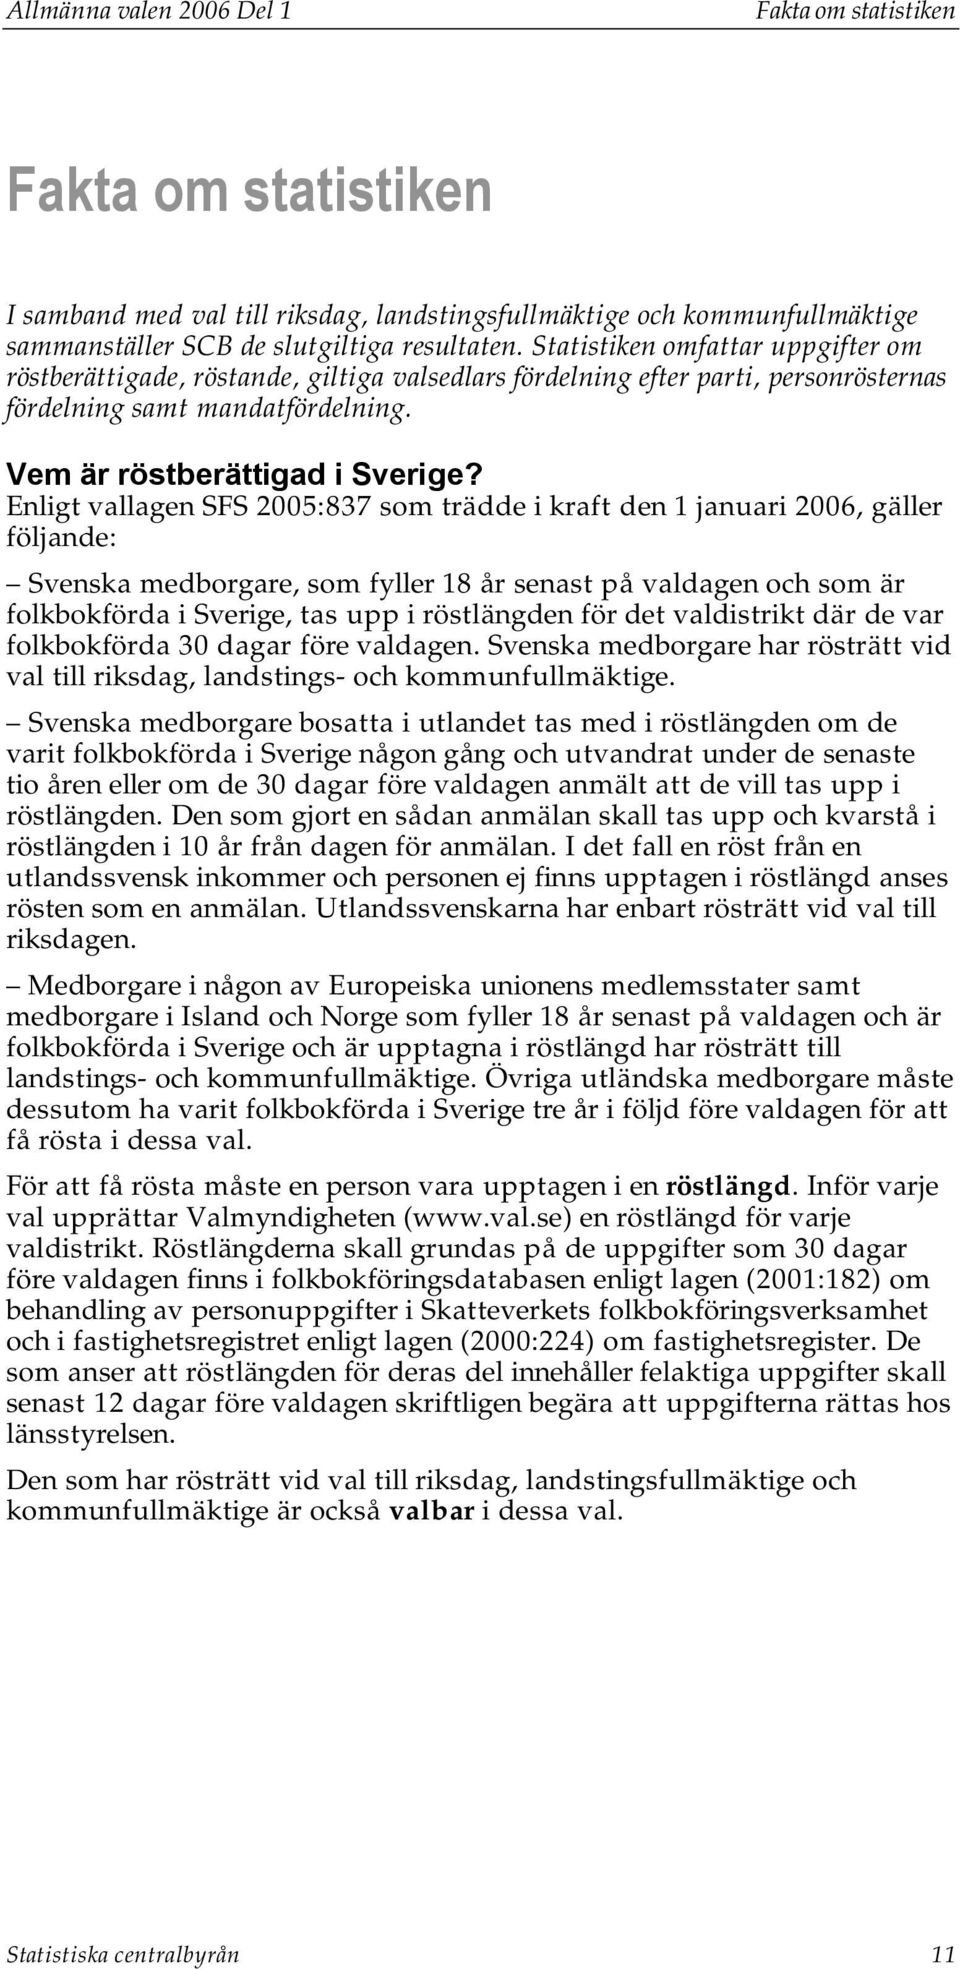 Enligt vallagen SFS 2005:837 som trädde i kraft den 1 januari 2006, gäller följande: Svenska medborgare, som fyller 18 år senast på valdagen och som är folkbokförda i Sverige, tas upp i röstlängden